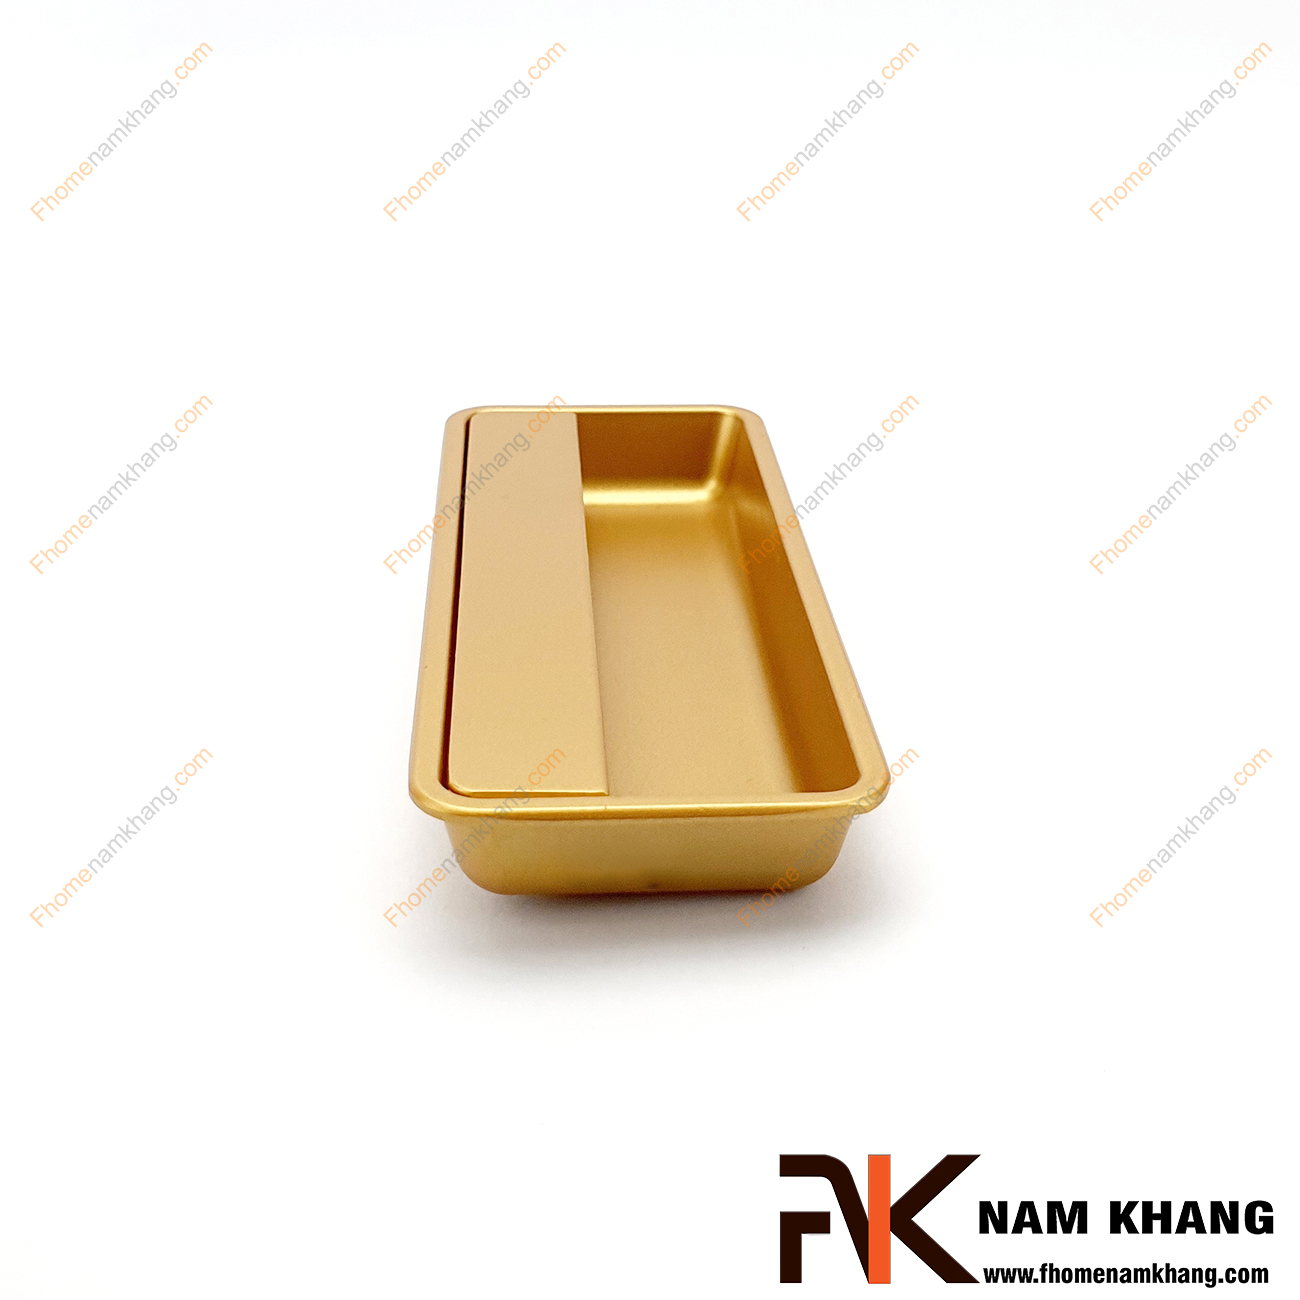 Tay nắm âm tủ màu vàng mờ NK462-VM là loại tay nắm chuyên dùng cho các loại tủ đặt ở những nơi có không gian hạn chế hoặc dùng để nâng cao tính thẫm mỹ của sản phẩm